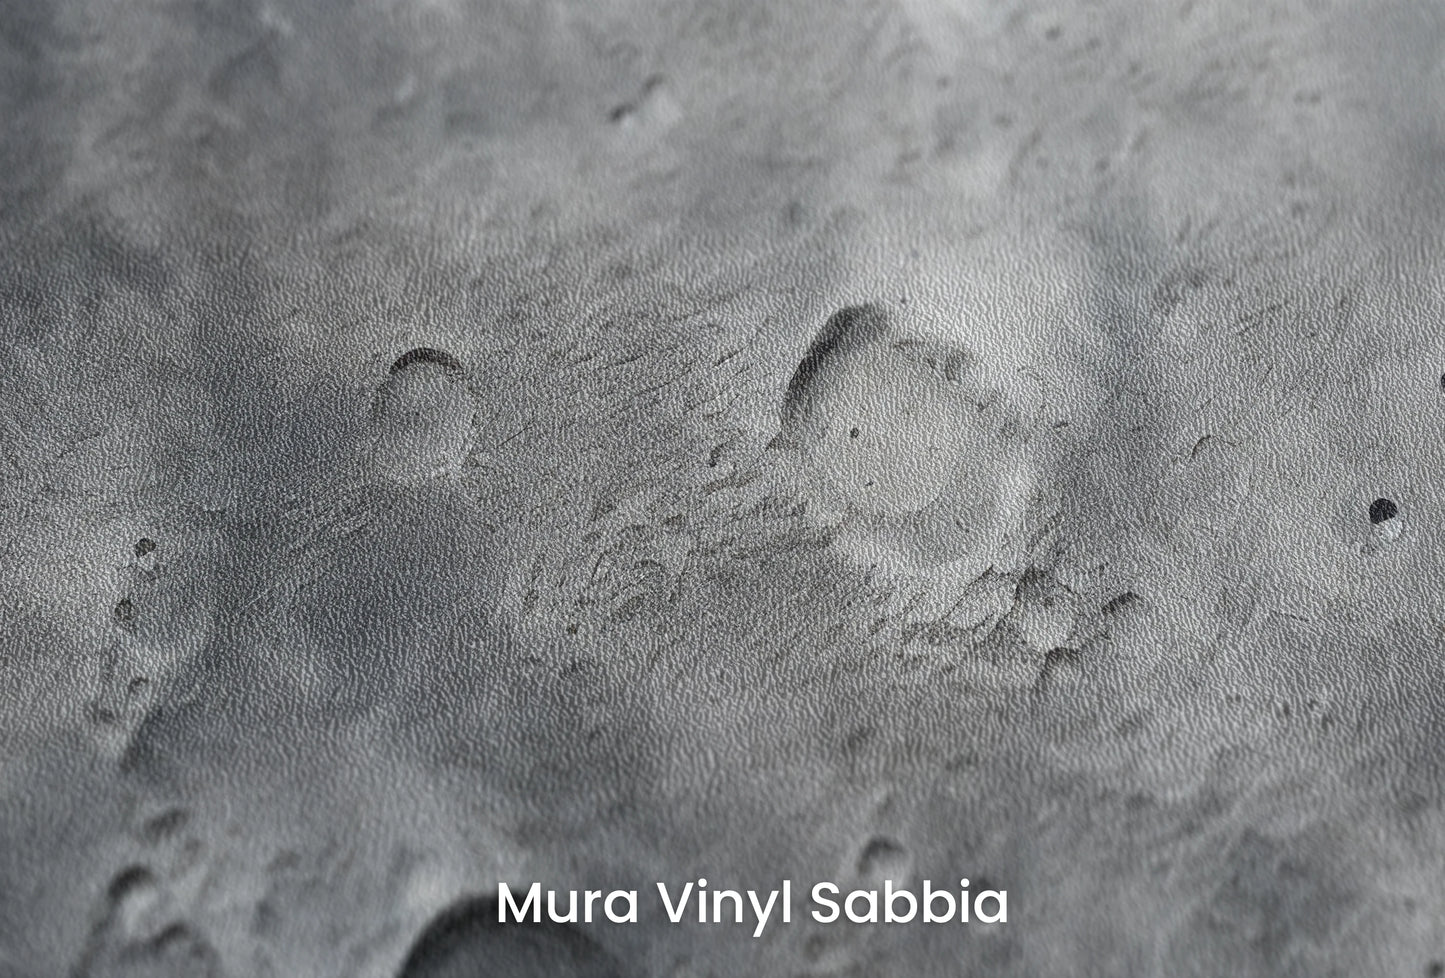 Zbliżenie na artystyczną fototapetę o nazwie Lunar Landscape #2 na podłożu Mura Vinyl Sabbia struktura grubego ziarna piasku.